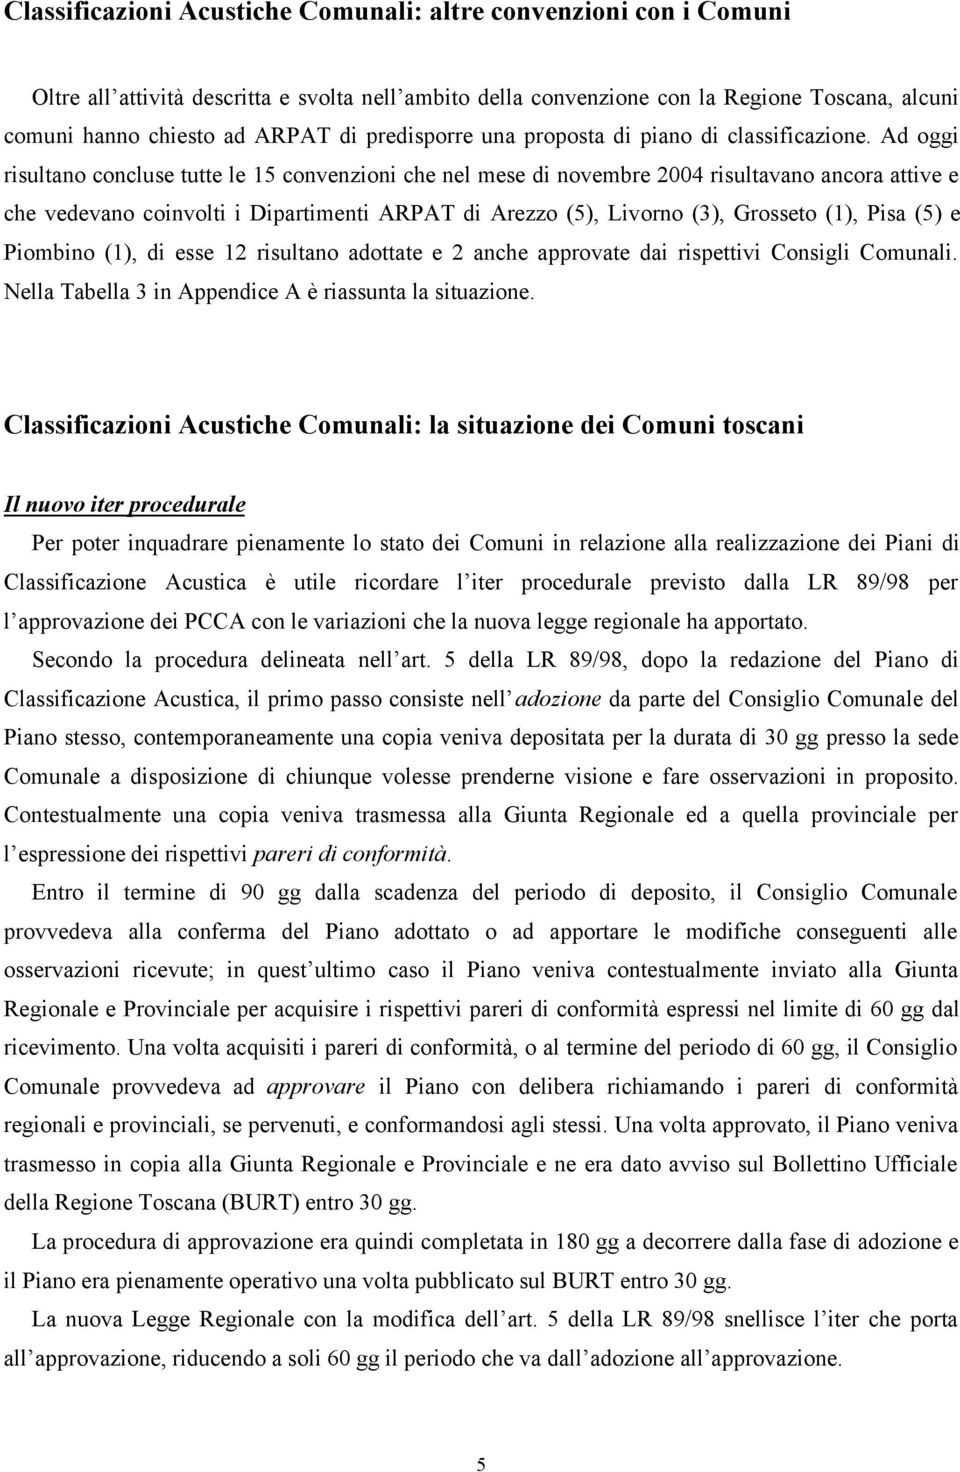 Ad oggi risultano concluse tutte le 15 convenzioni che nel mese di novembre 2004 risultavano ancora attive e che vedevano coinvolti i Dipartimenti ARPAT di Arezzo (5), Livorno (3), Grosseto (1), Pisa